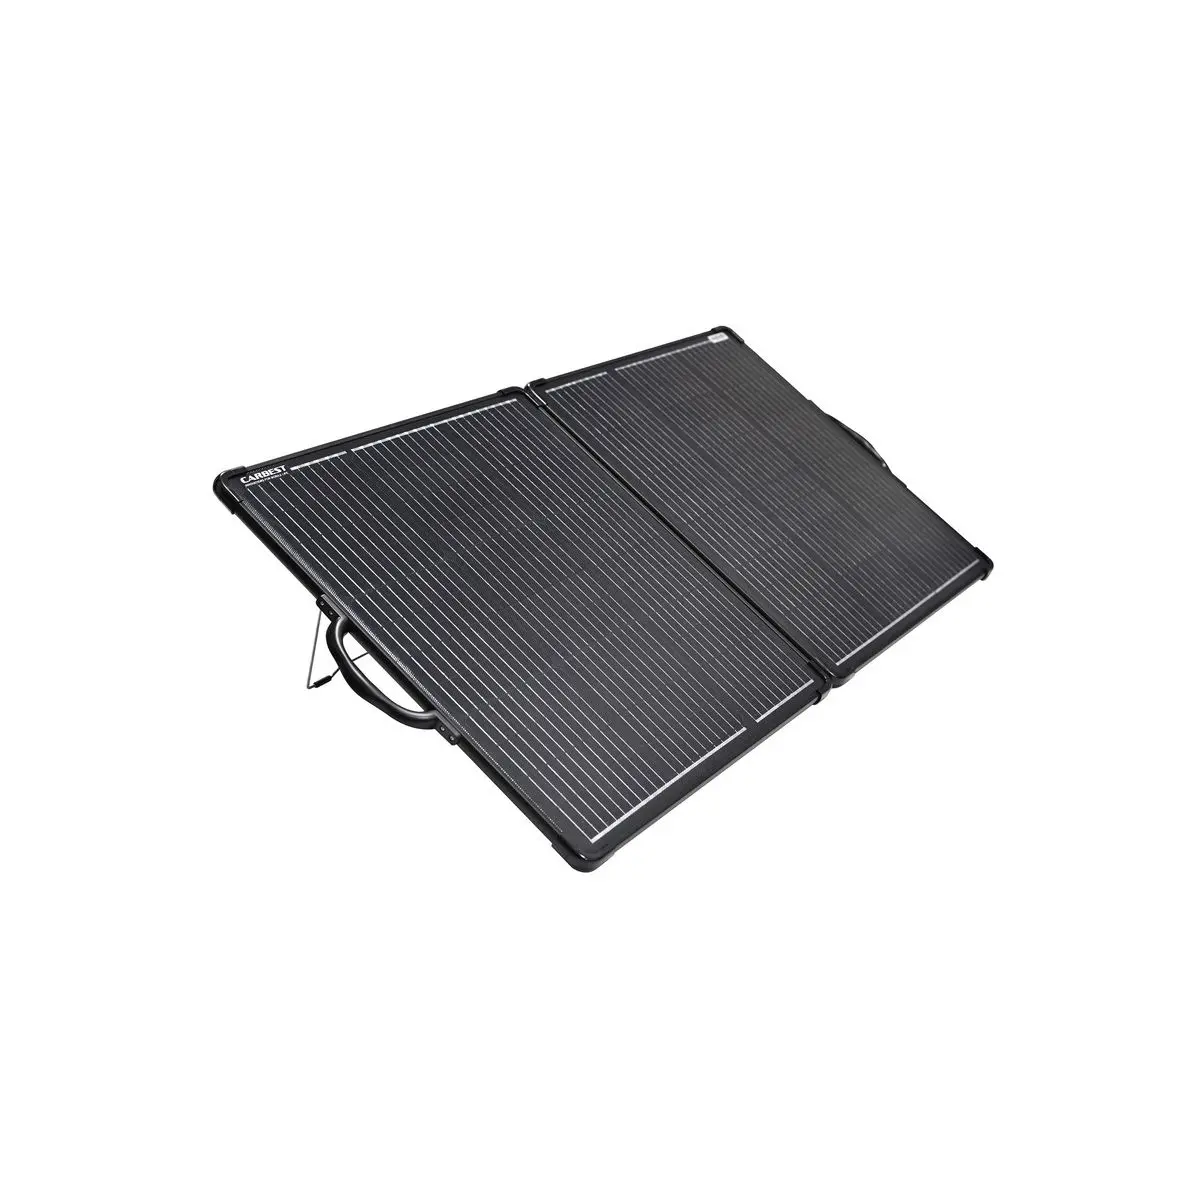 Összecsukható teljesítményű napelem HC130 - 130 W